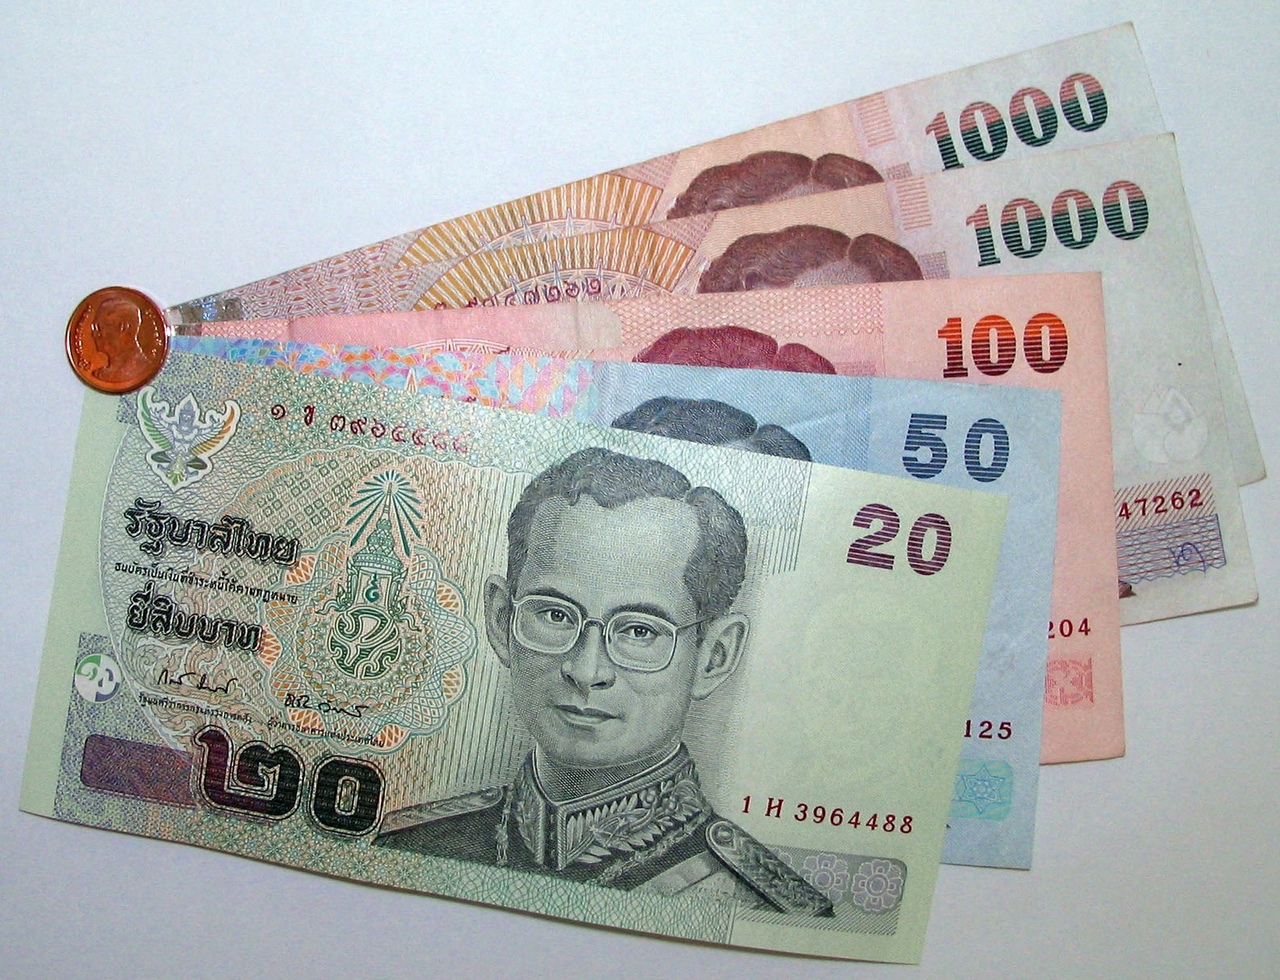 Тайский бат
(thb, валюты стран азии)
→ доллар сша, $
(usd, 
основные мировые валюты)